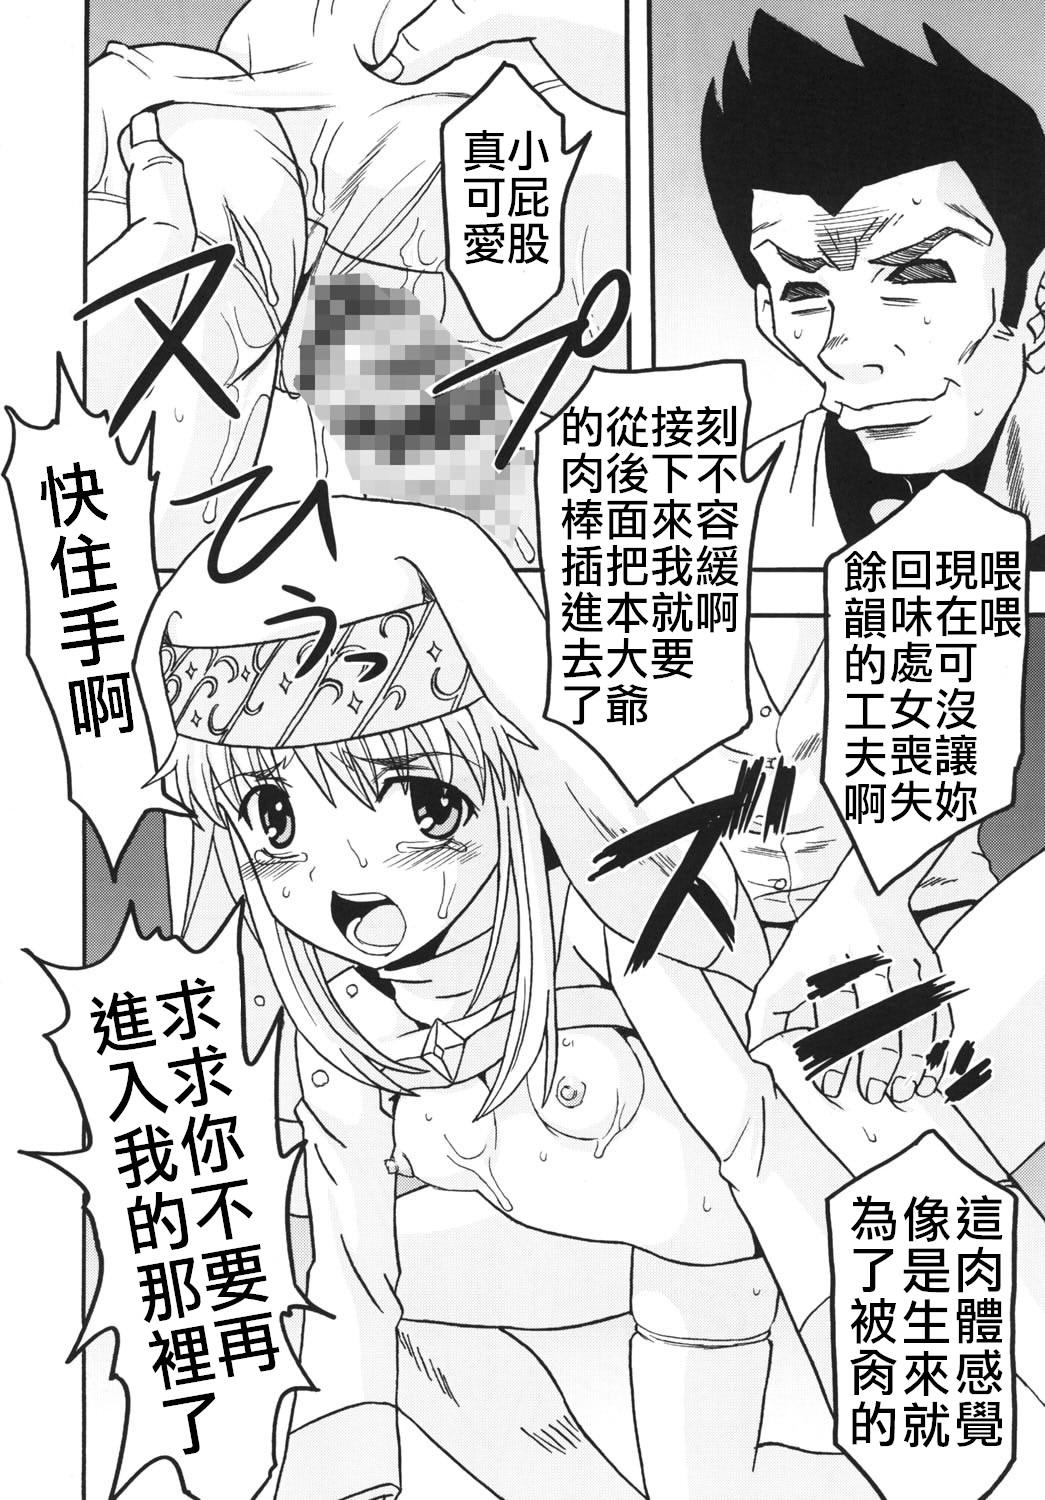 Toaru Otaku no Index #1 | 某魔术的淫书目录 #01 11